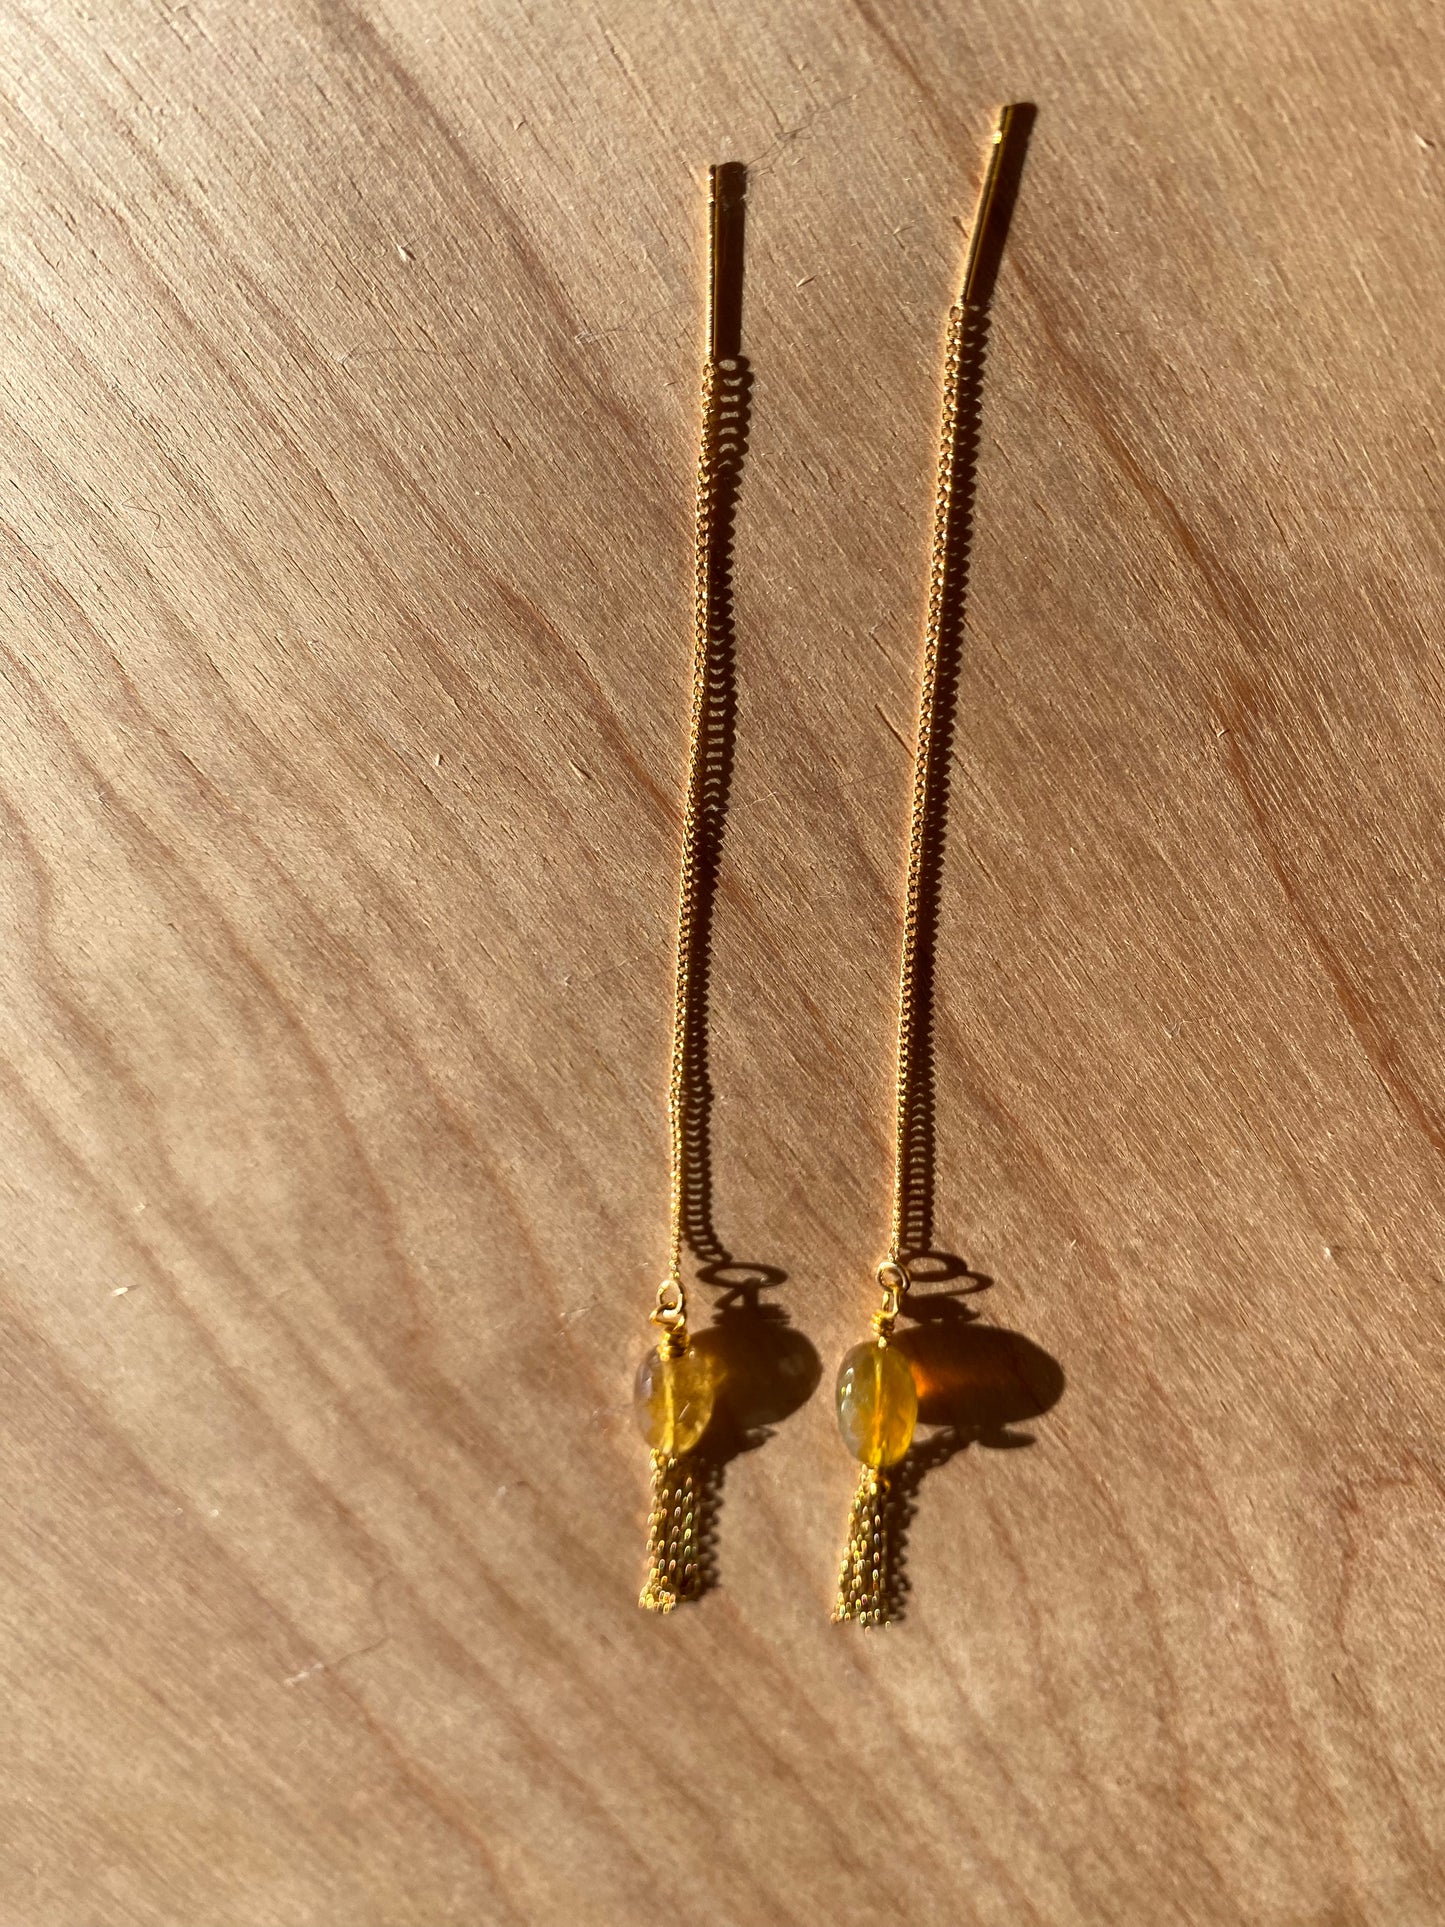 Wildflower Sapphire earrings